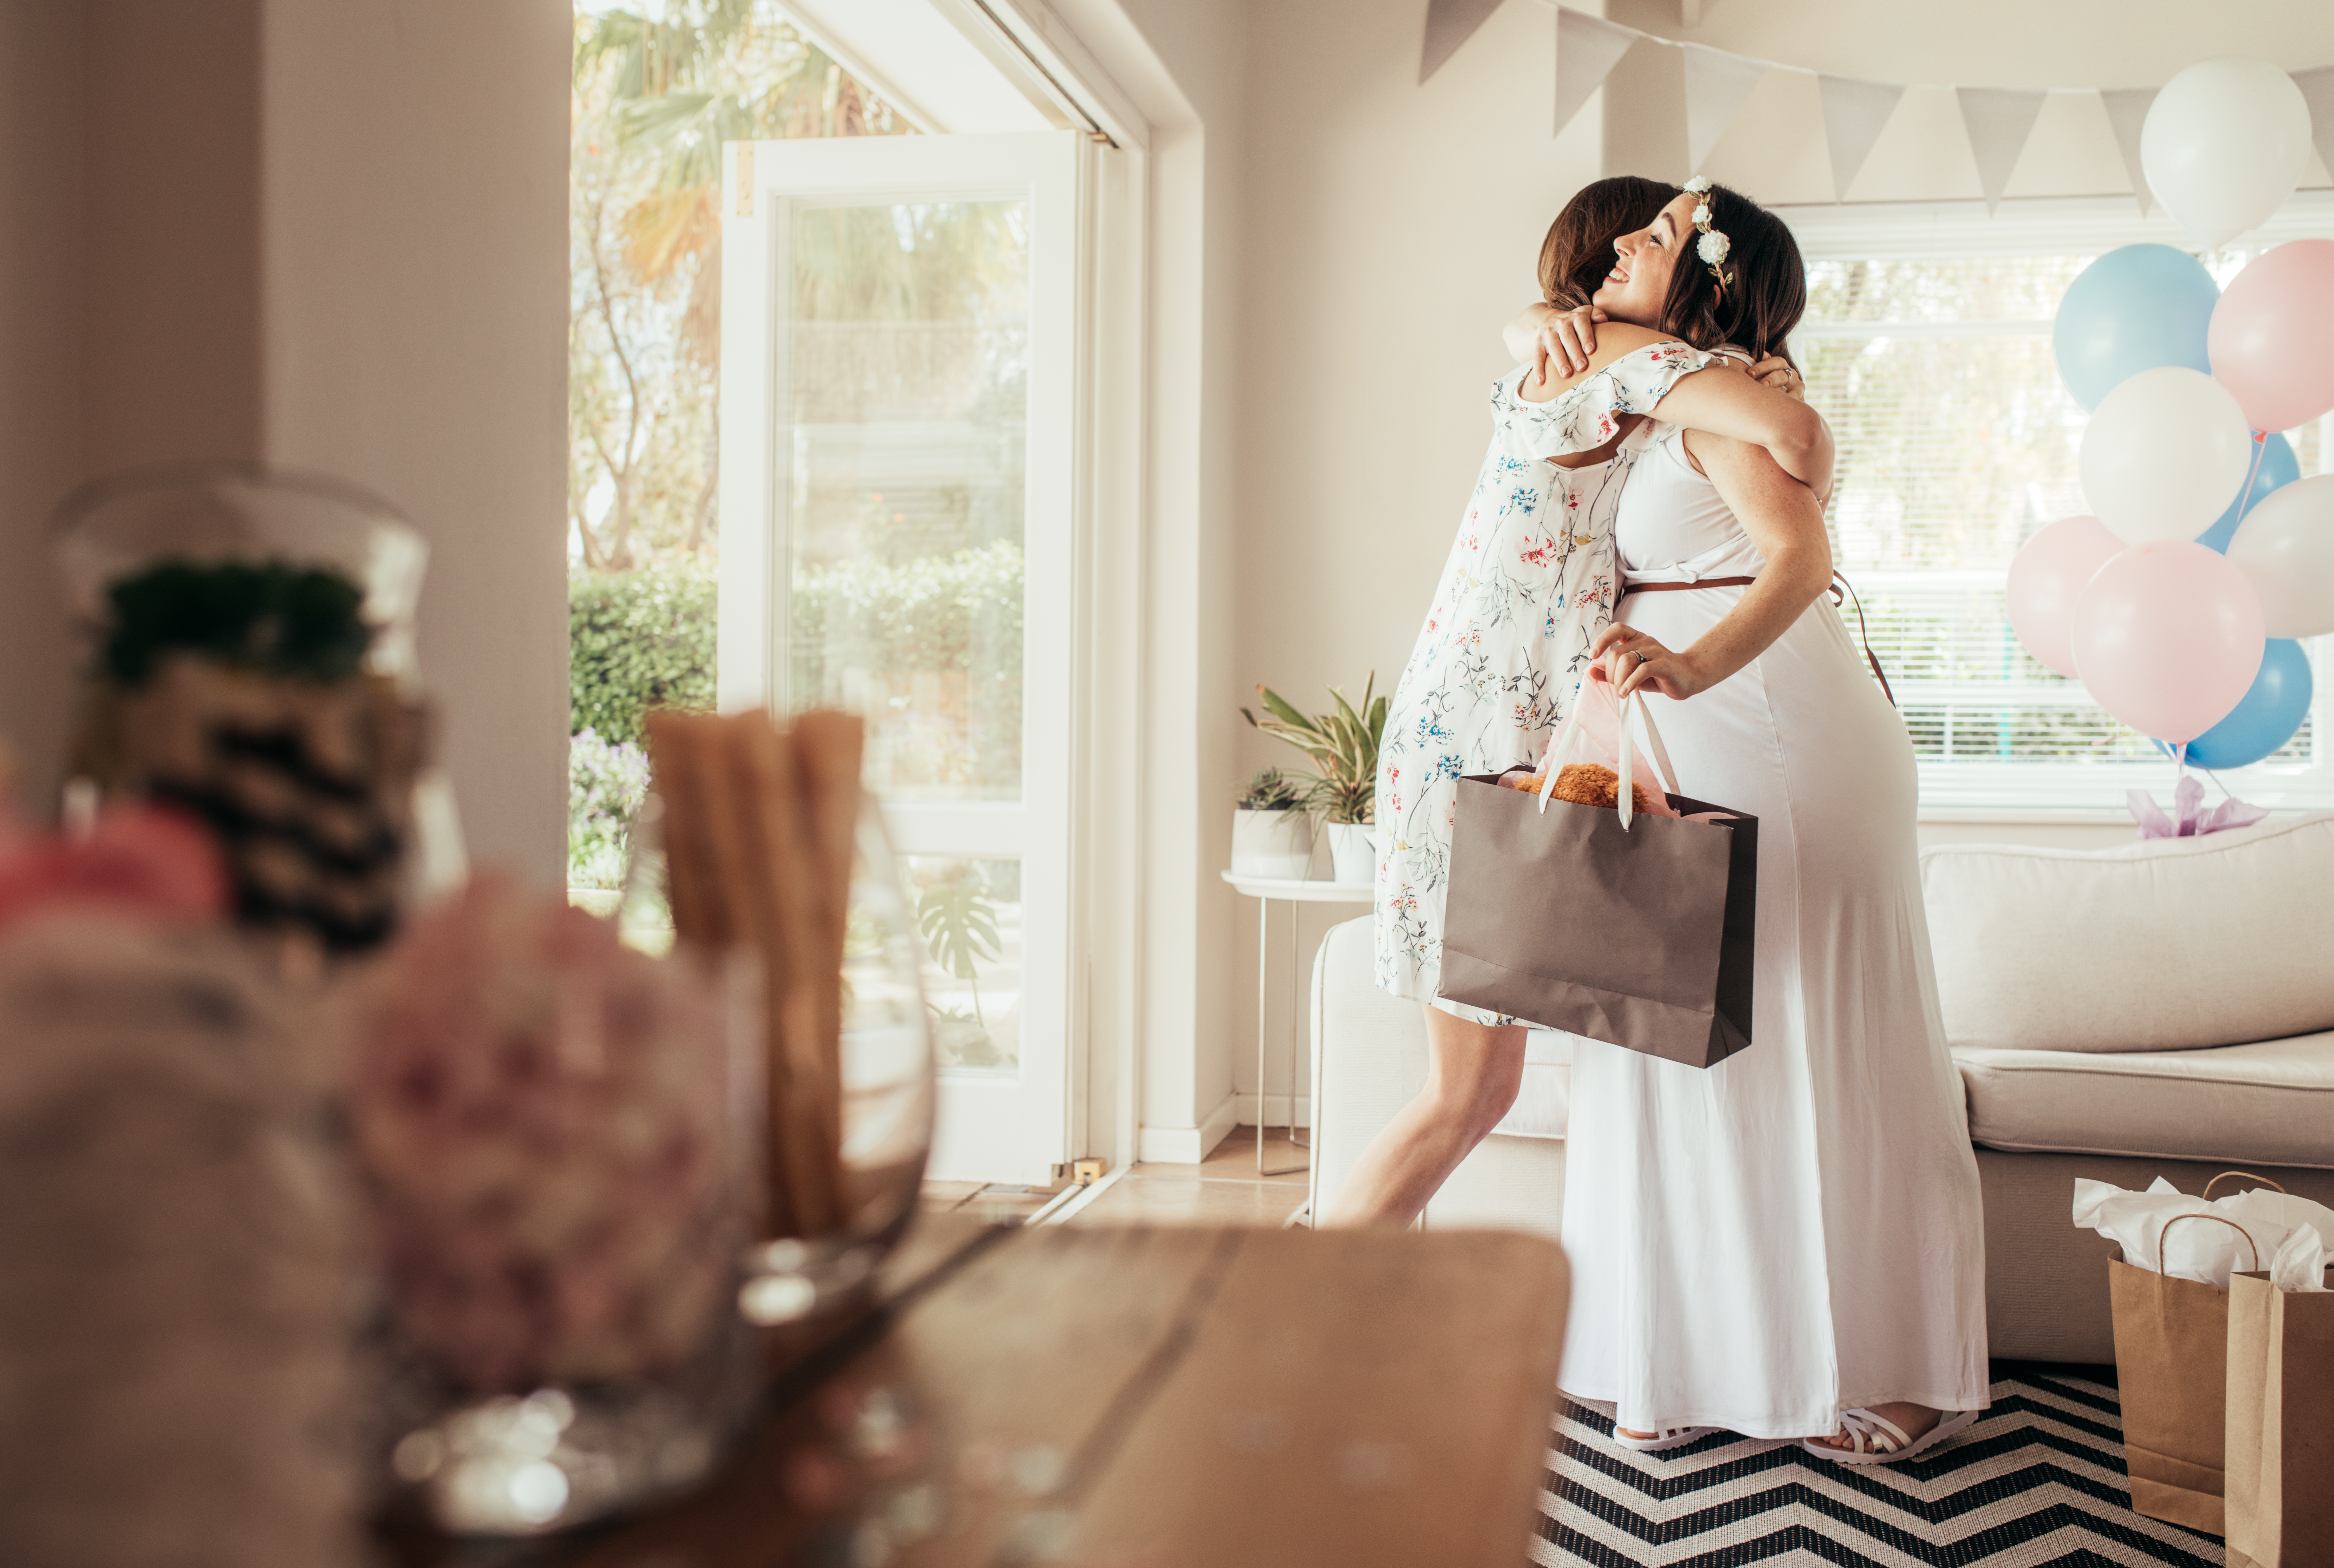 Mujer abrazando a su futura madre en un baby shower | Foto: Shutterstock